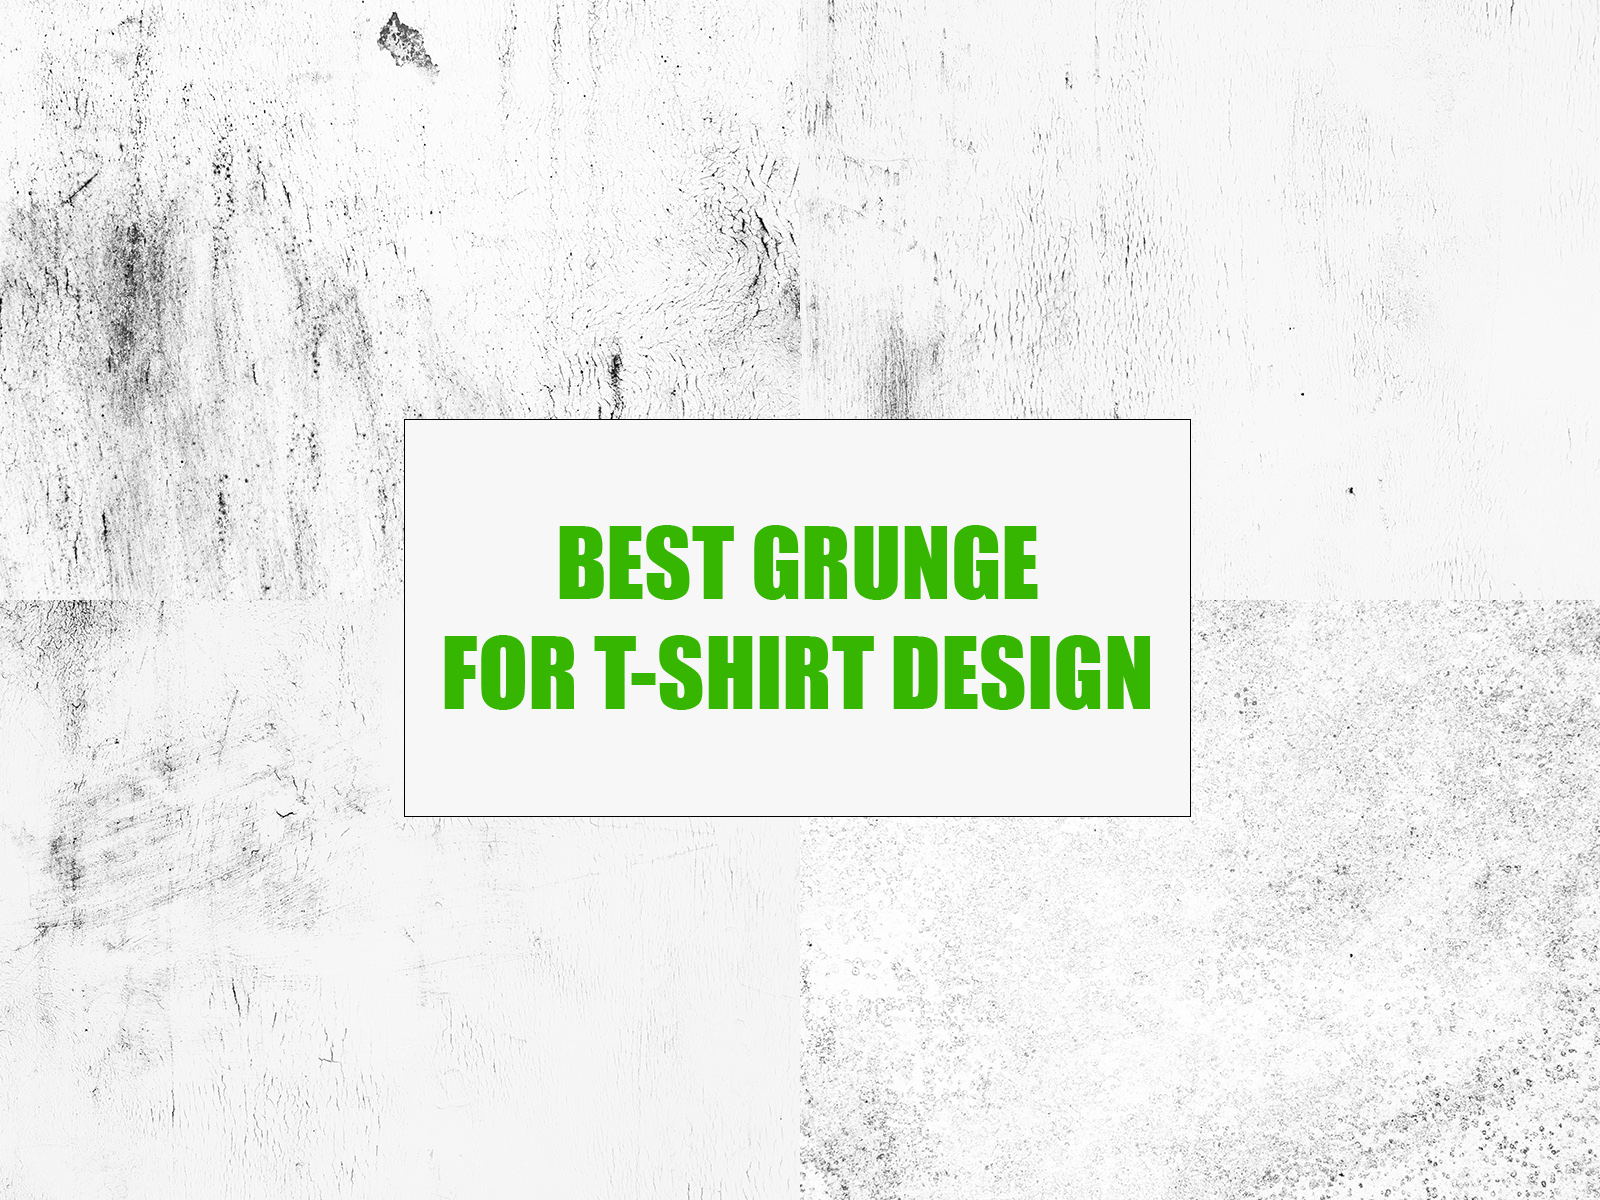 Best Grunge for T-Shirt Design | T-Shirt Design in illustrator